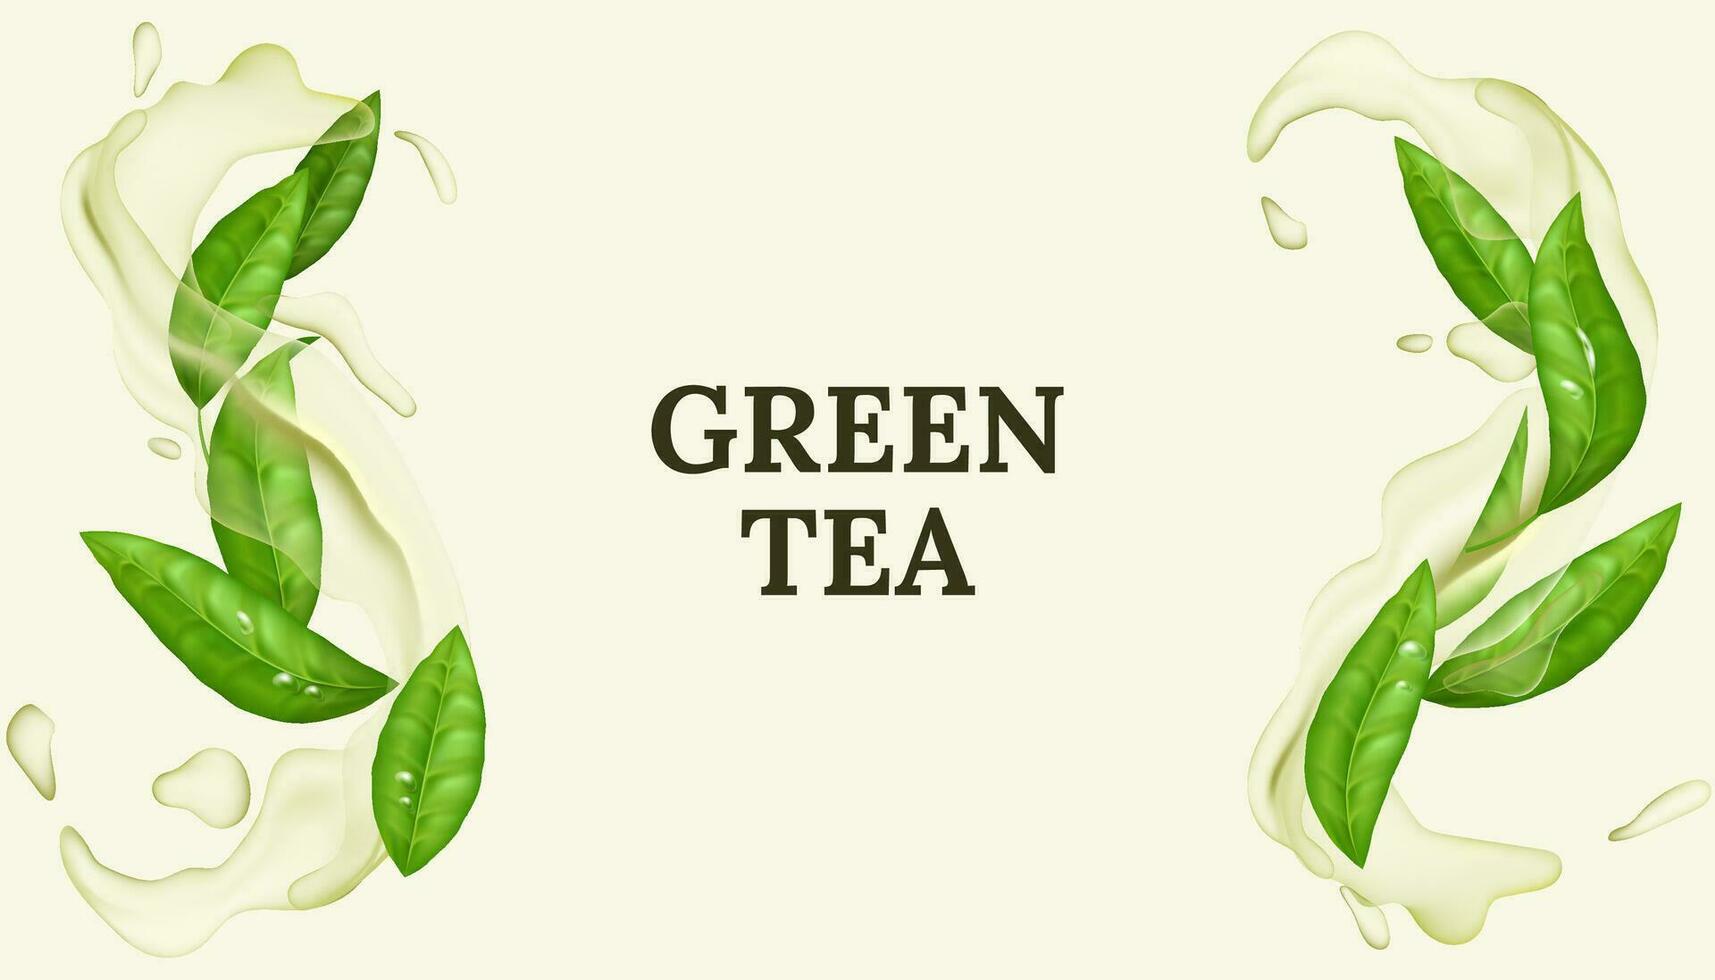 refrescante verde té hoja en 3d vector ilustración. natural y orgánico, con un chapoteo de agua creando un frio y limpiar movimiento. menta verde aroma y Fresco menta sabor.